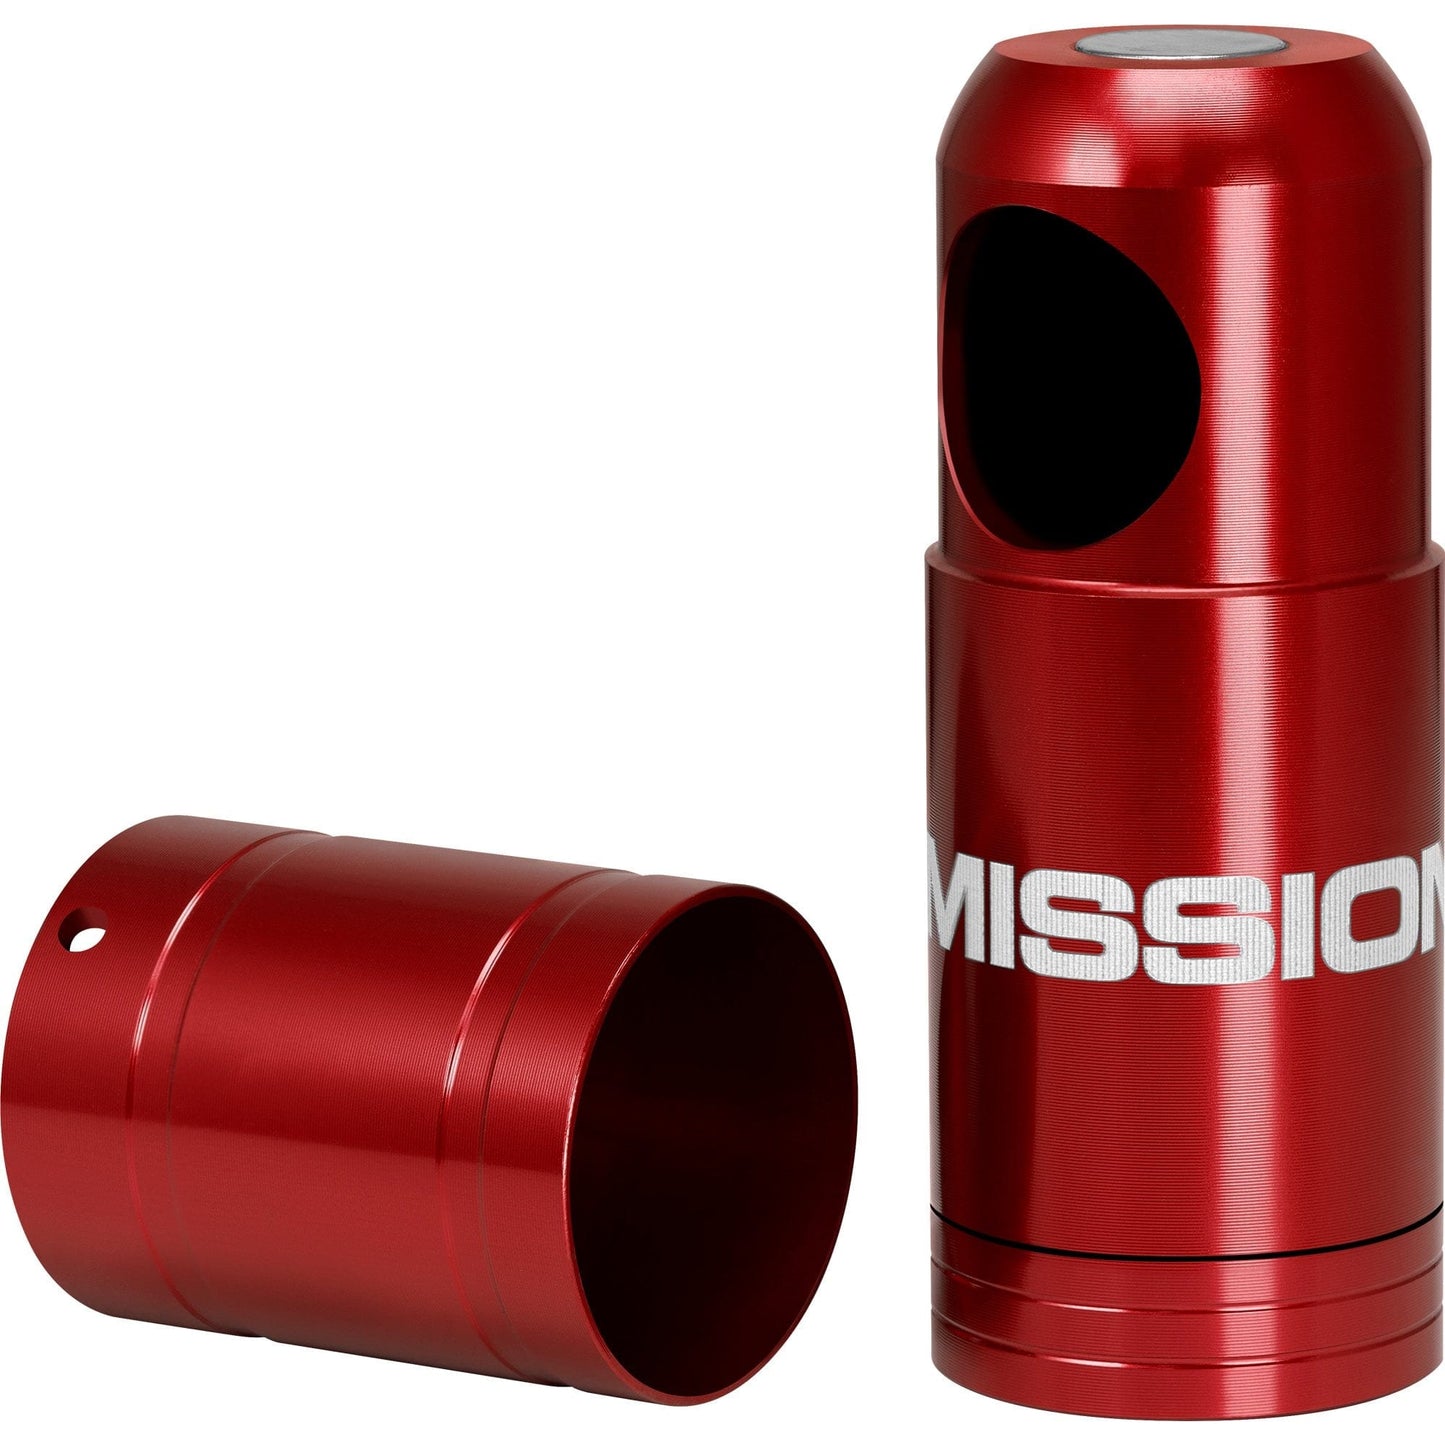 Mission Soft Tip Dispenser - holds 25 tips - Magnetic Holder Red